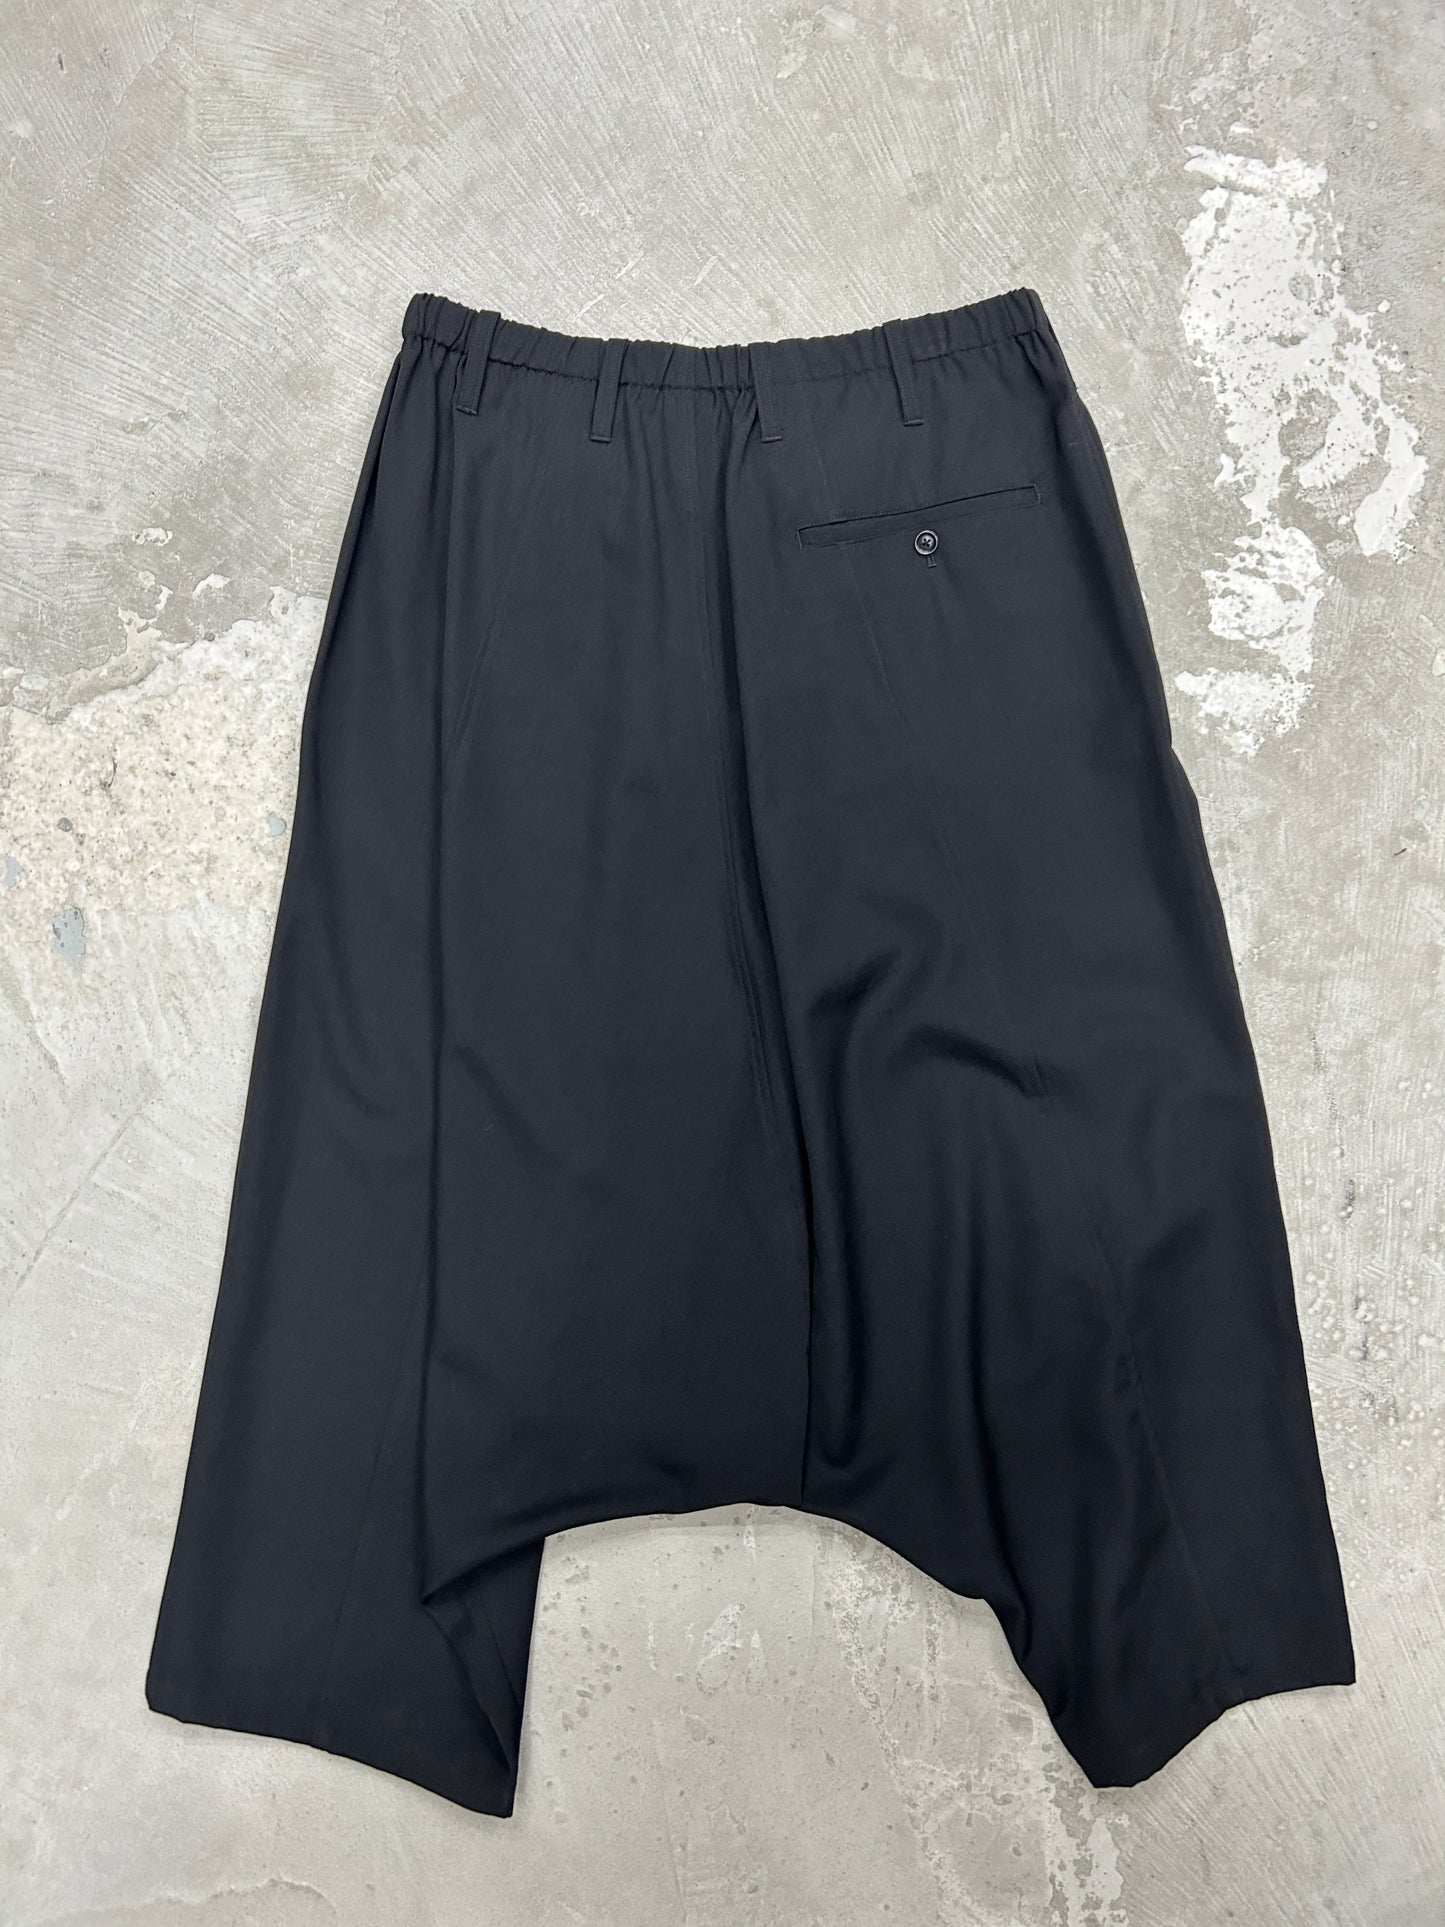 Yohji Yamamoto Pour Homme SS2016 Low Crotch Trouser-Size 3